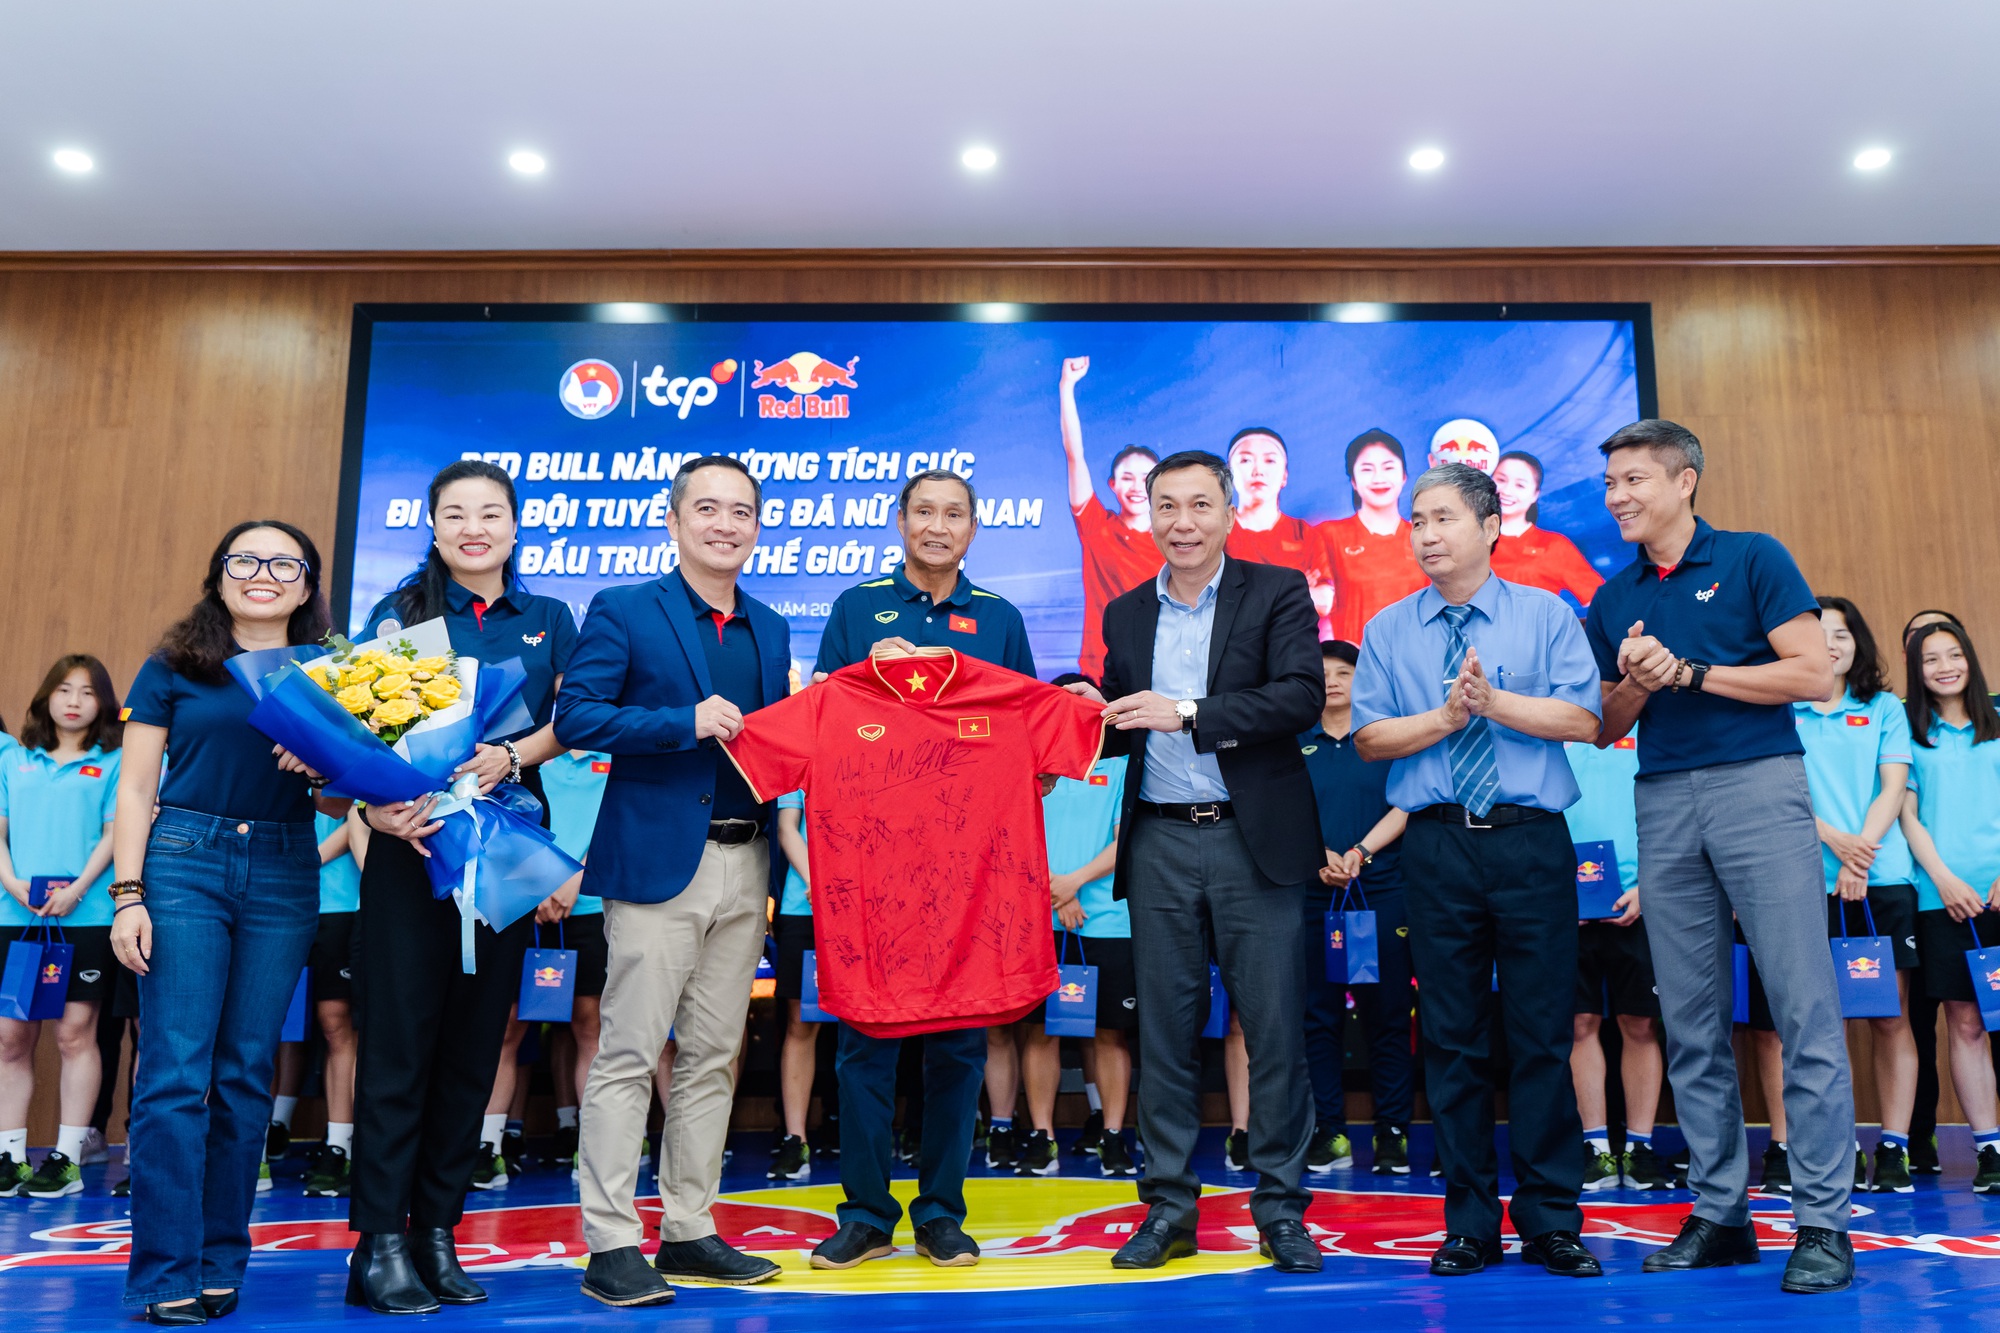 Lãnh đạo VFF trao áo đấu đặc biệt của đội tuyển nữ Việt Nam cho TCP Việt Nam và nhãn hàng Red Bull